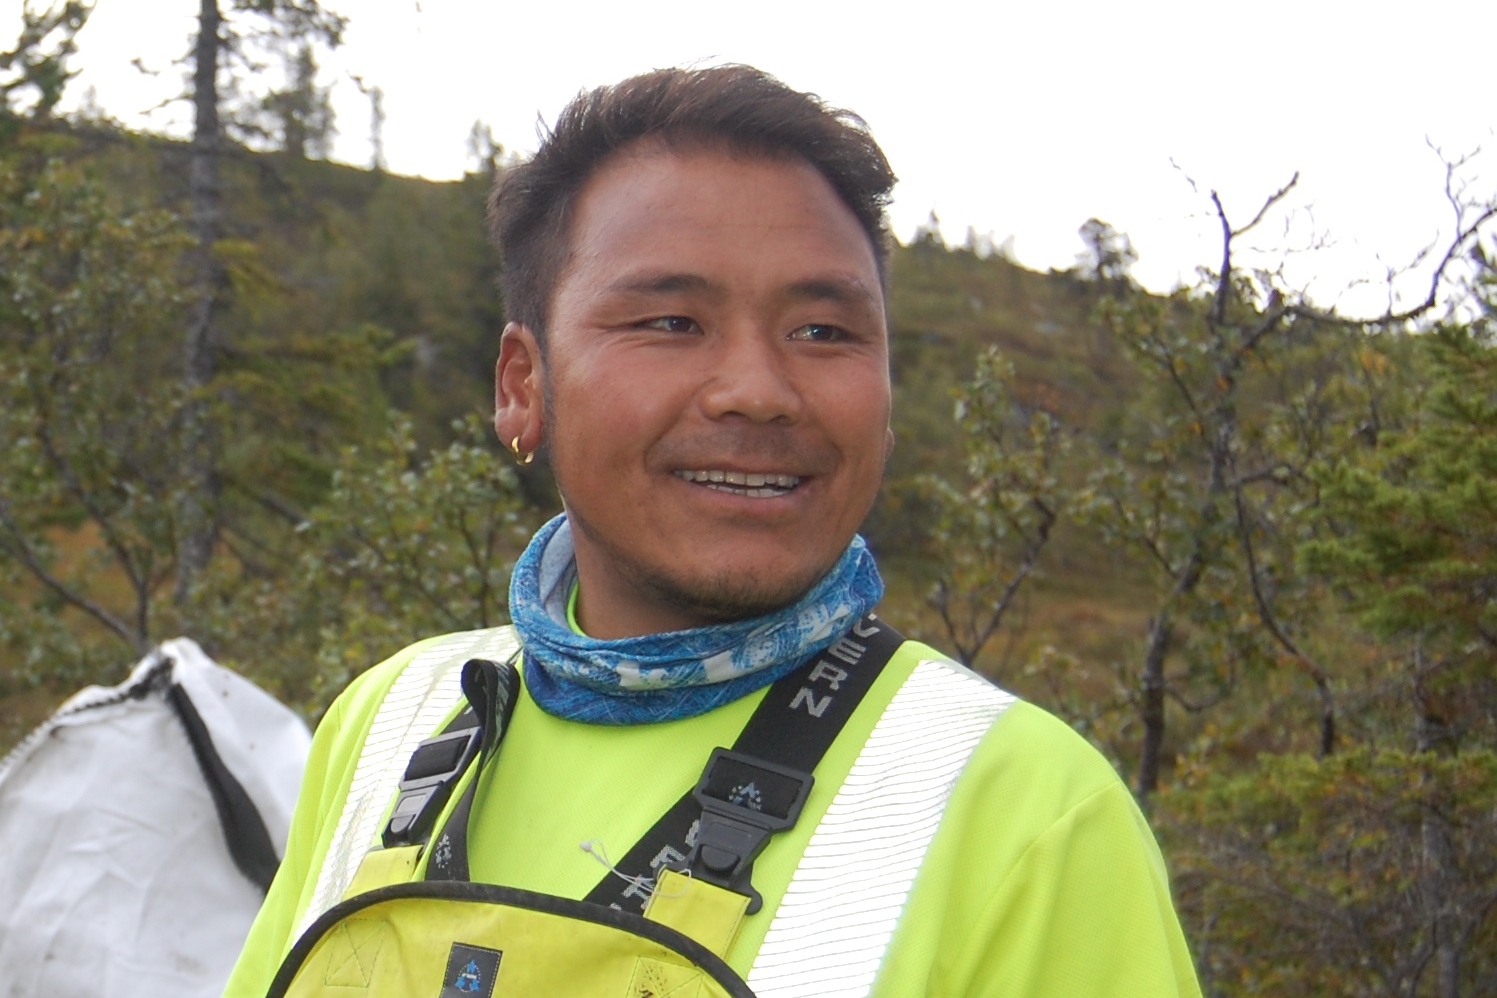 Dawa T. Sherpa har vært 5 ganger på Mt. Everest, men liker bedre å jobbe i Eggedal der det er mindre risiko. Foto Svein Olav Tovsrud, LHL Sigdal